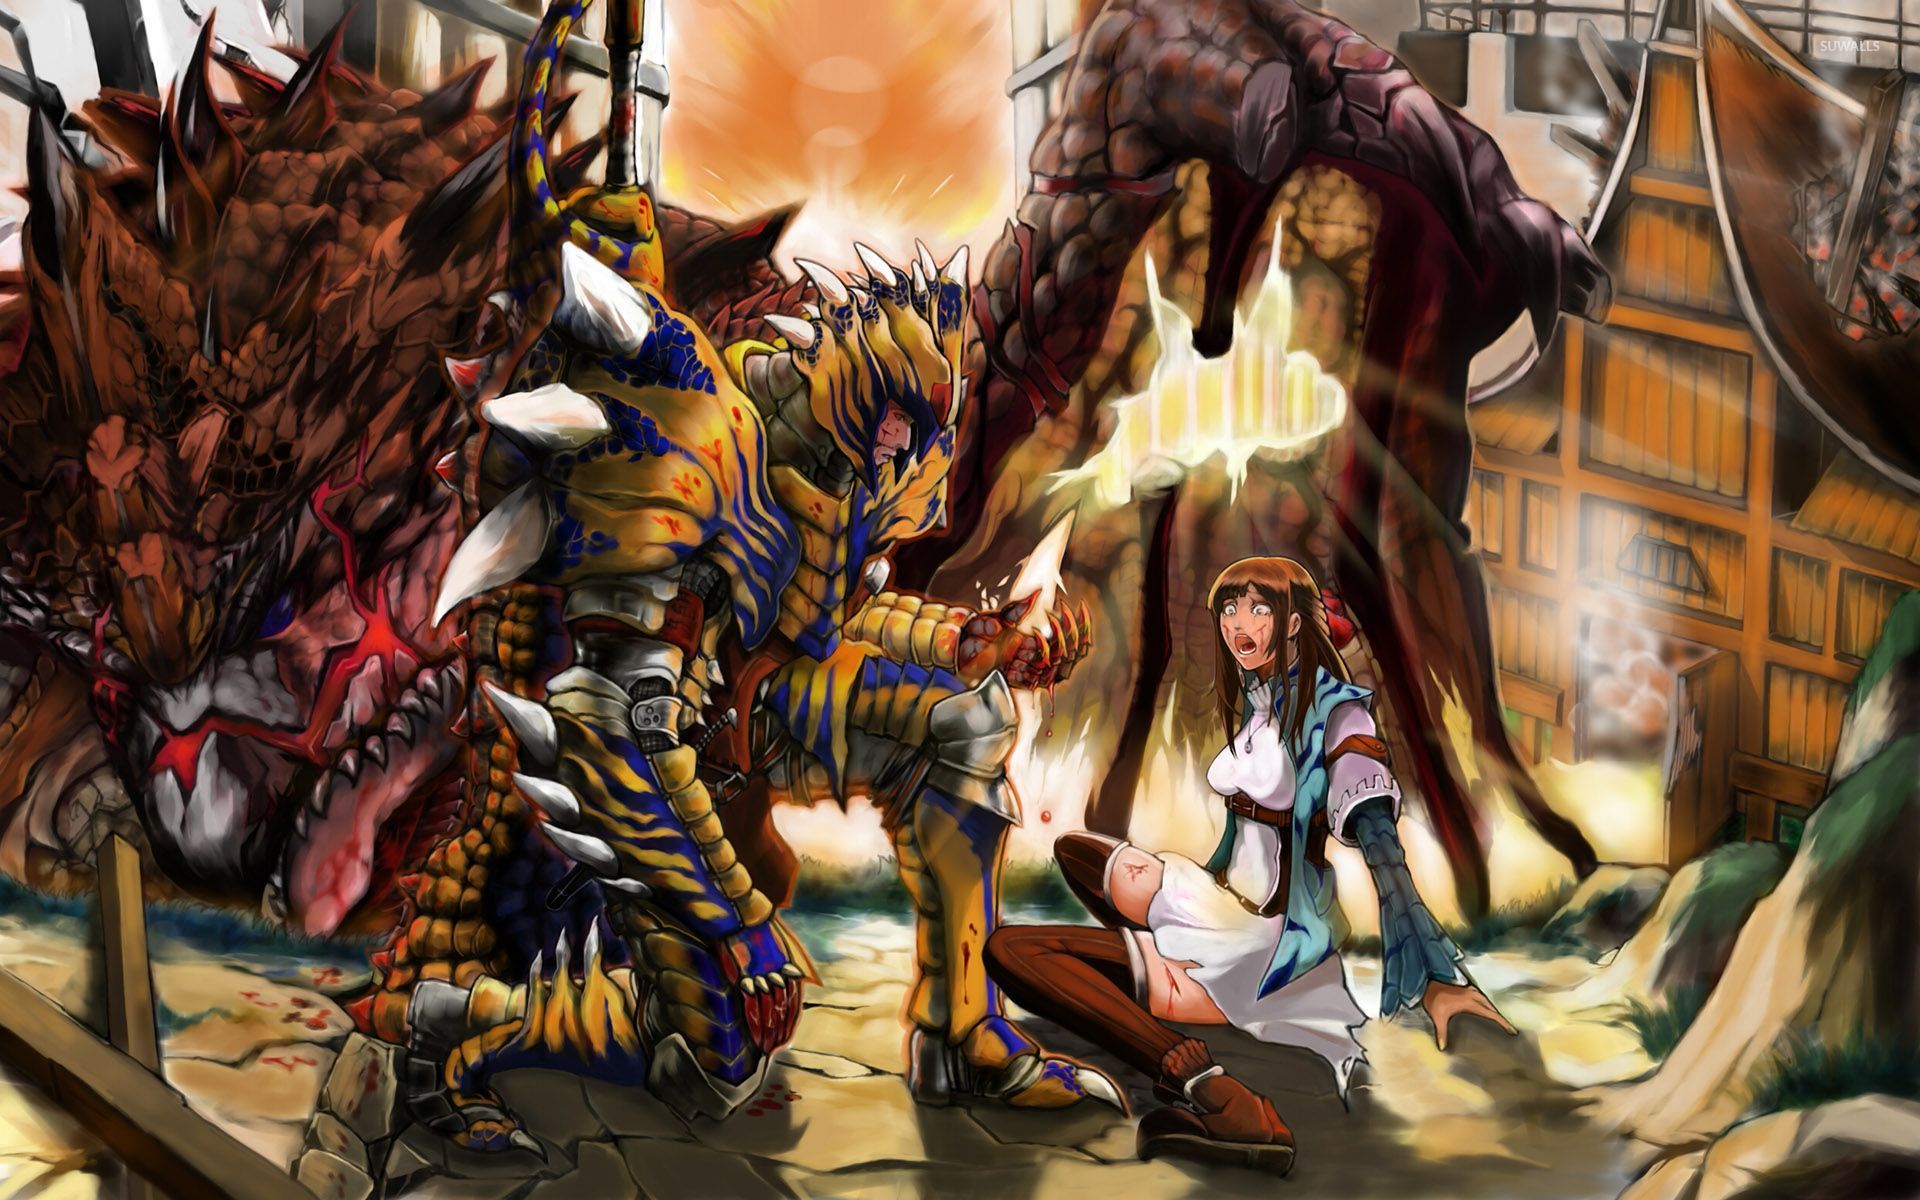 monstruo anime fondo de pantalla,juego de acción y aventura,cg artwork,juego de pc,ficción,mitología